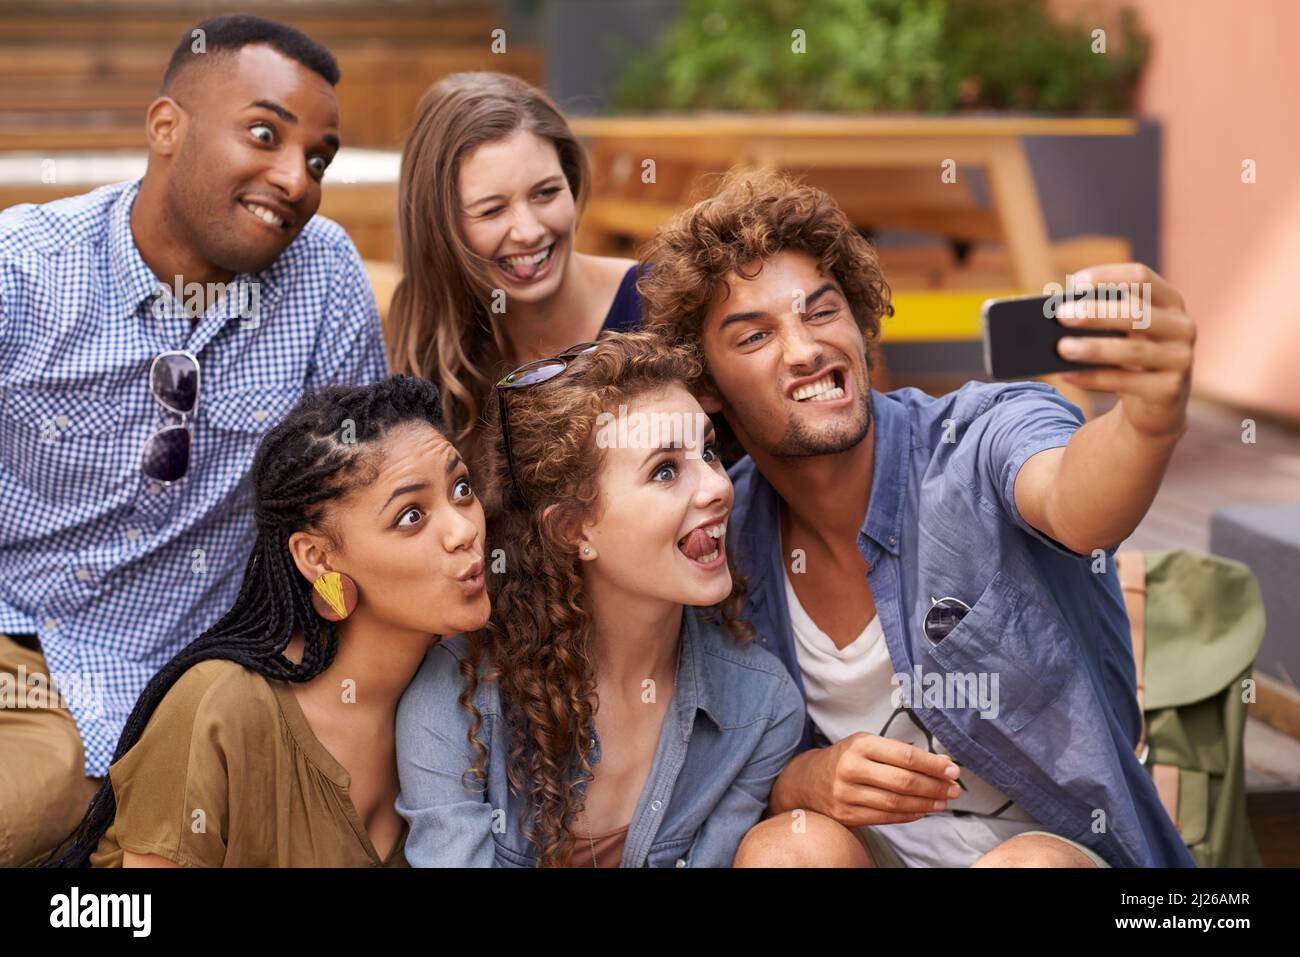 Tous à bord du Selfie express. Une photo de groupe d'étudiants universitaires s'amusant sur le campus. Banque D'Images